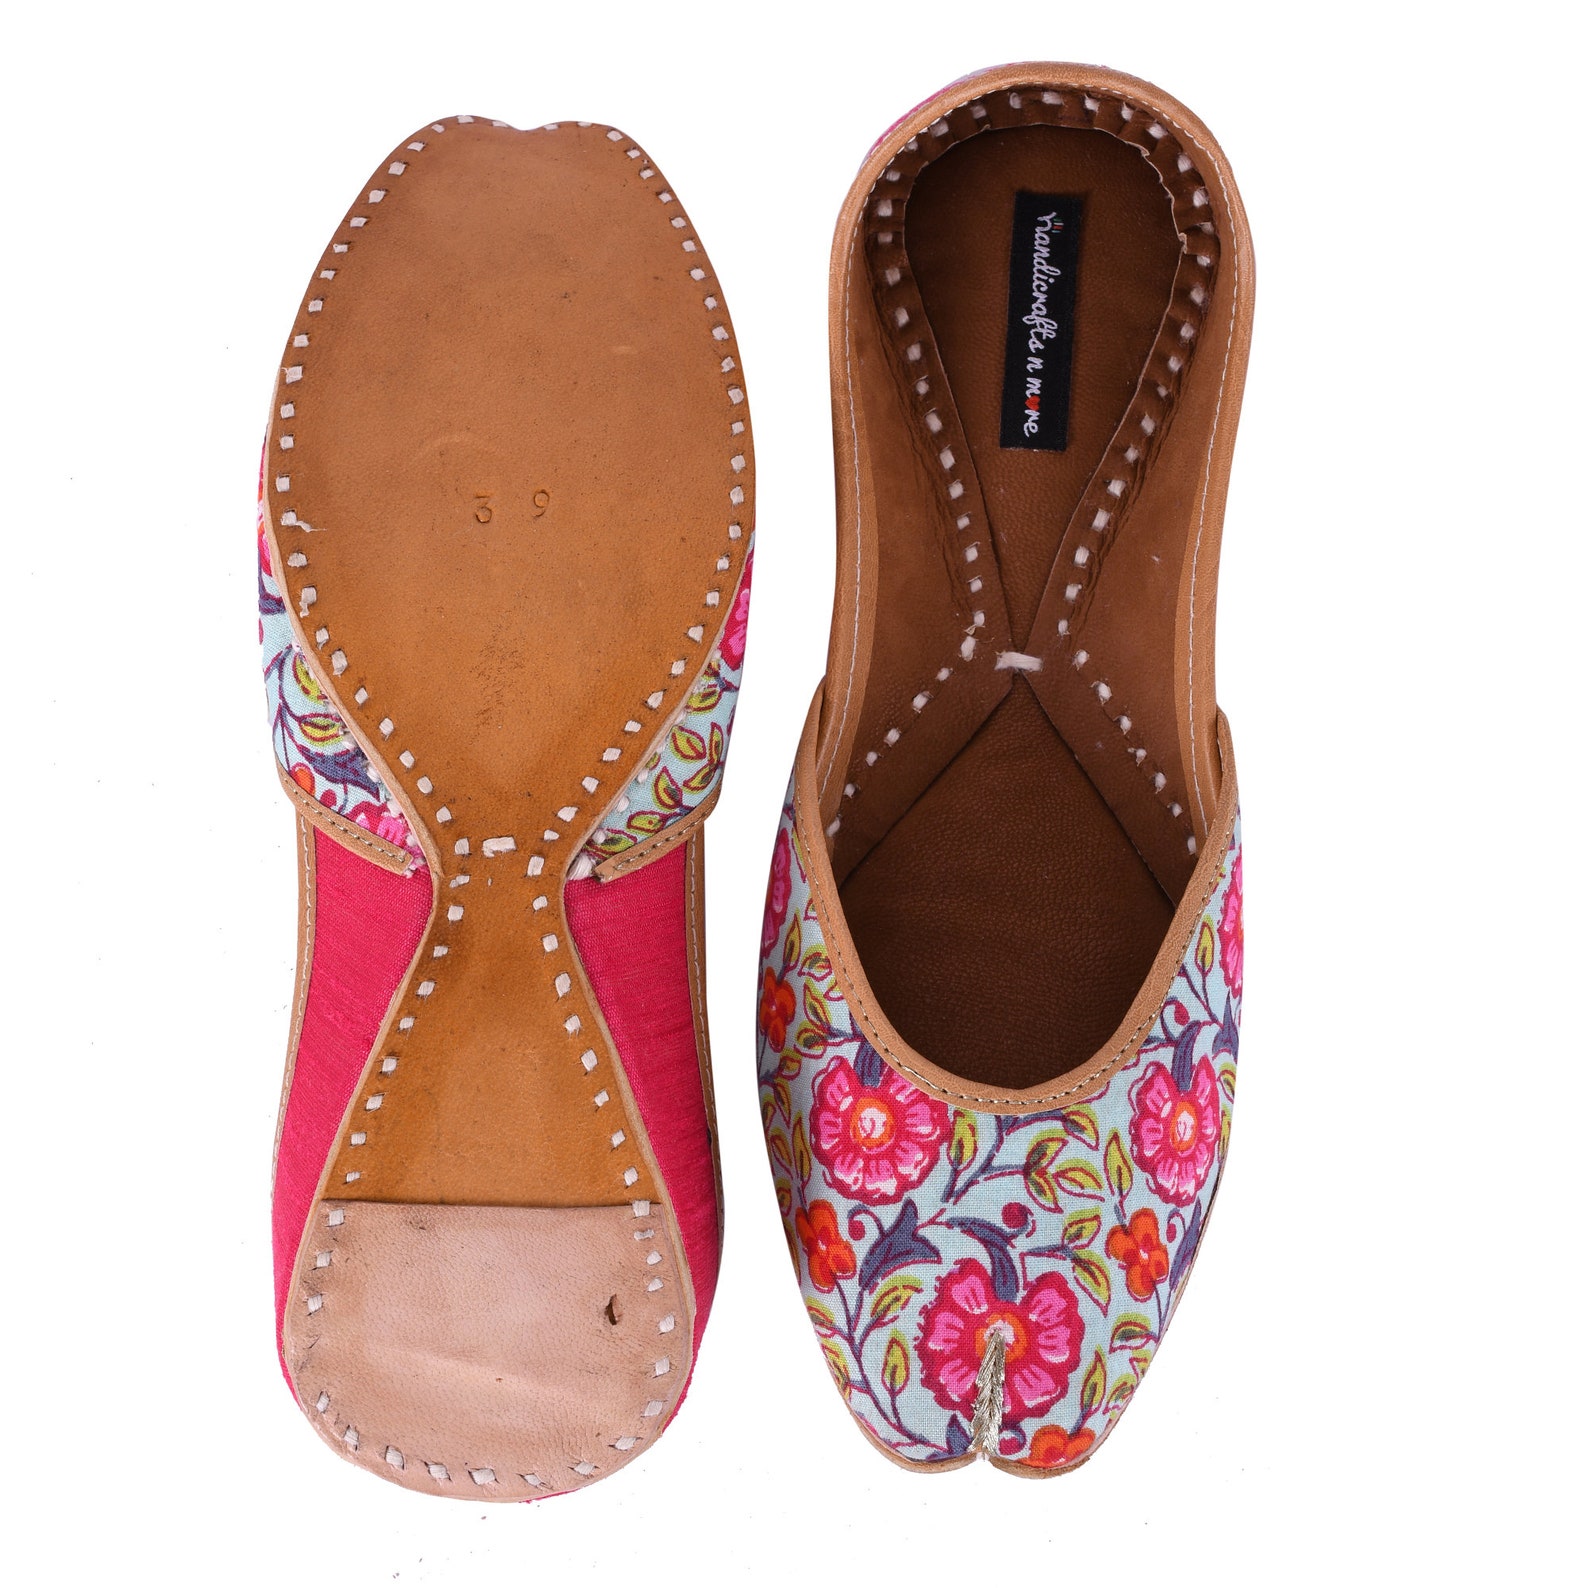 pink juttis ,pink ballet shoes, embellished wedding shoes, mojaris, indian shoes, pink mojaris